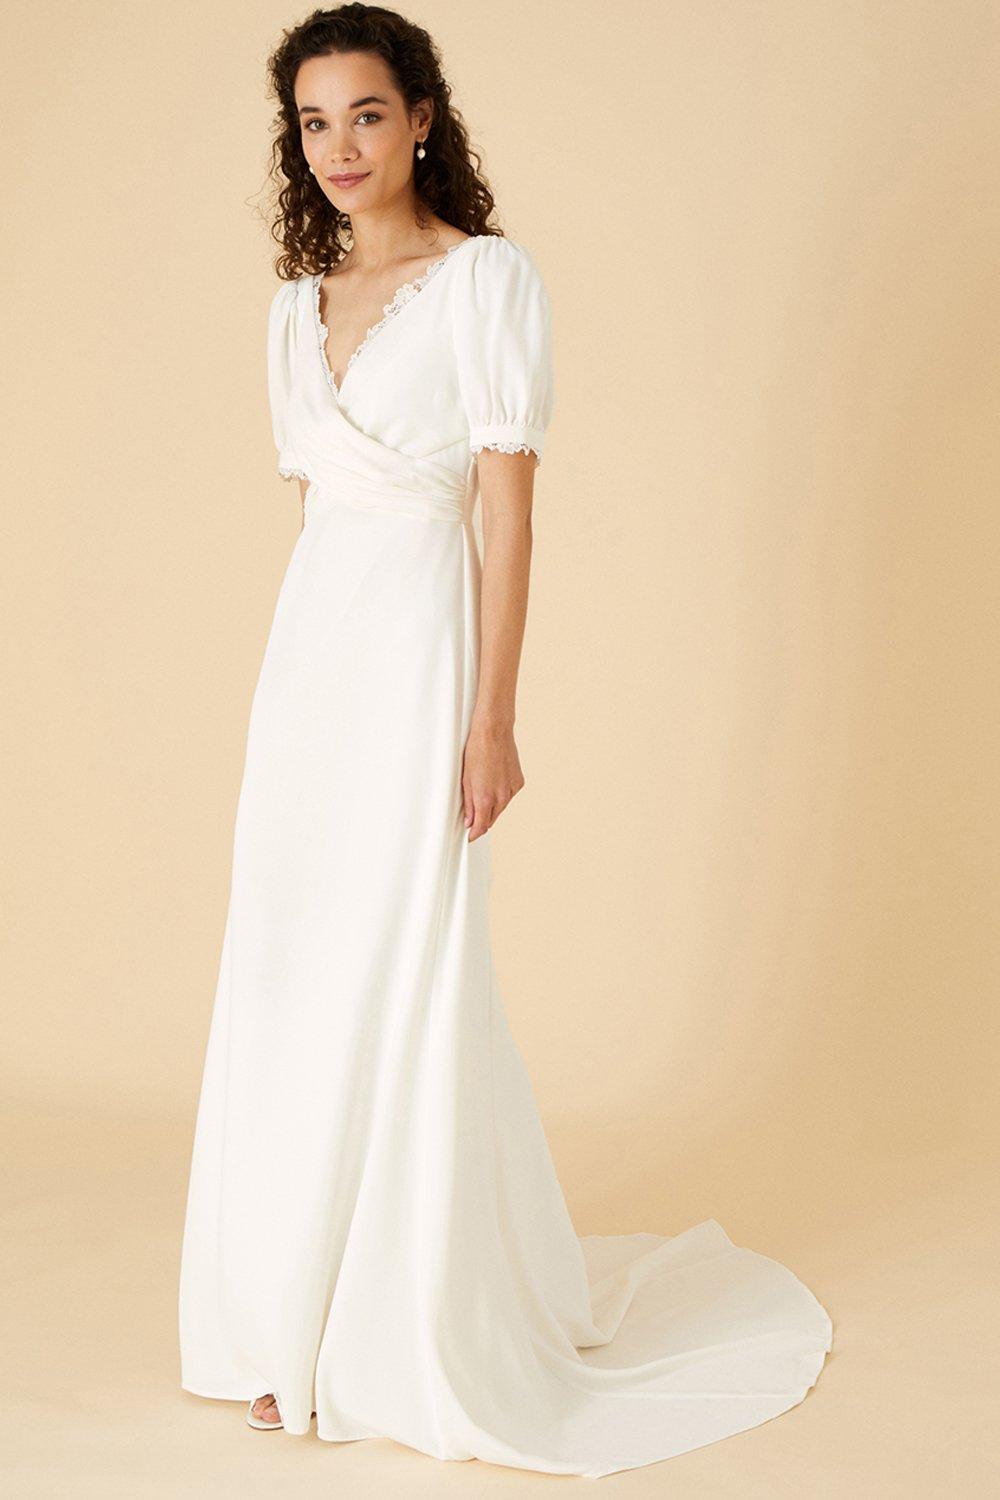 Buy White Dresses Online - JJ's House